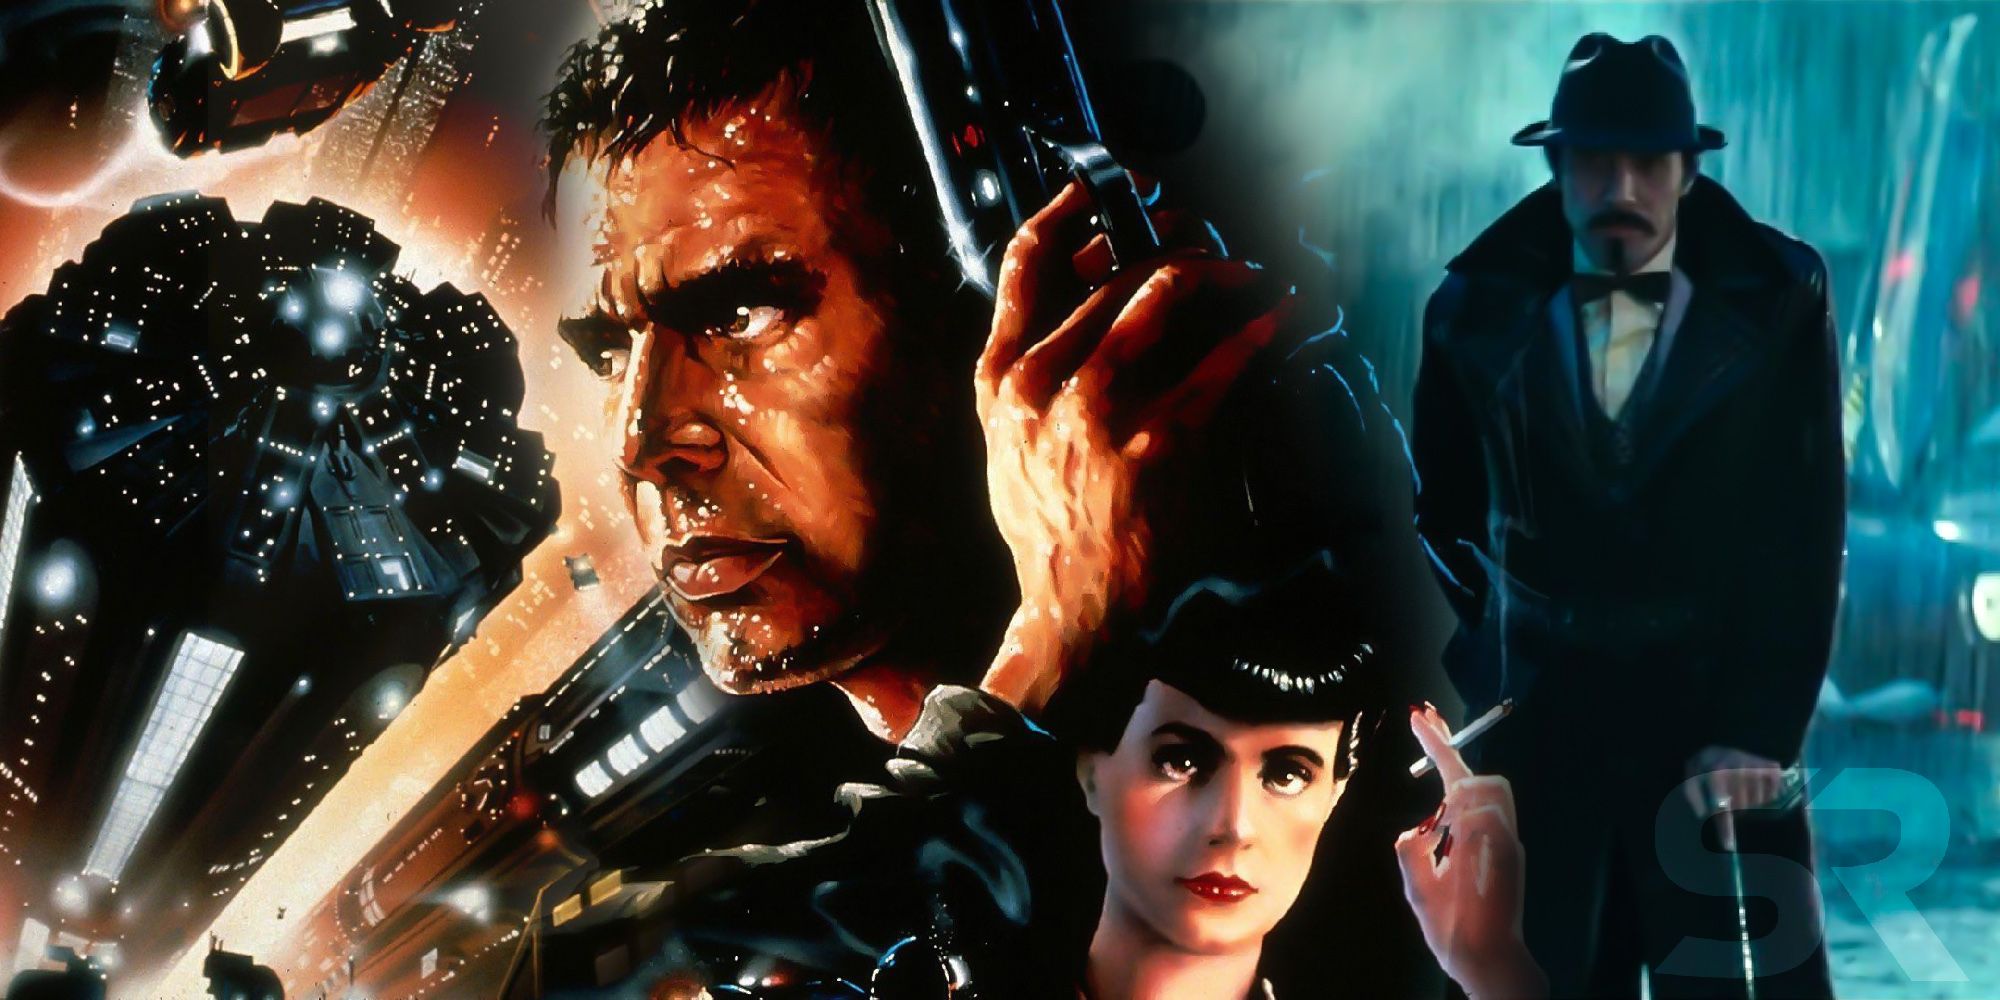 Blade Runner Poster